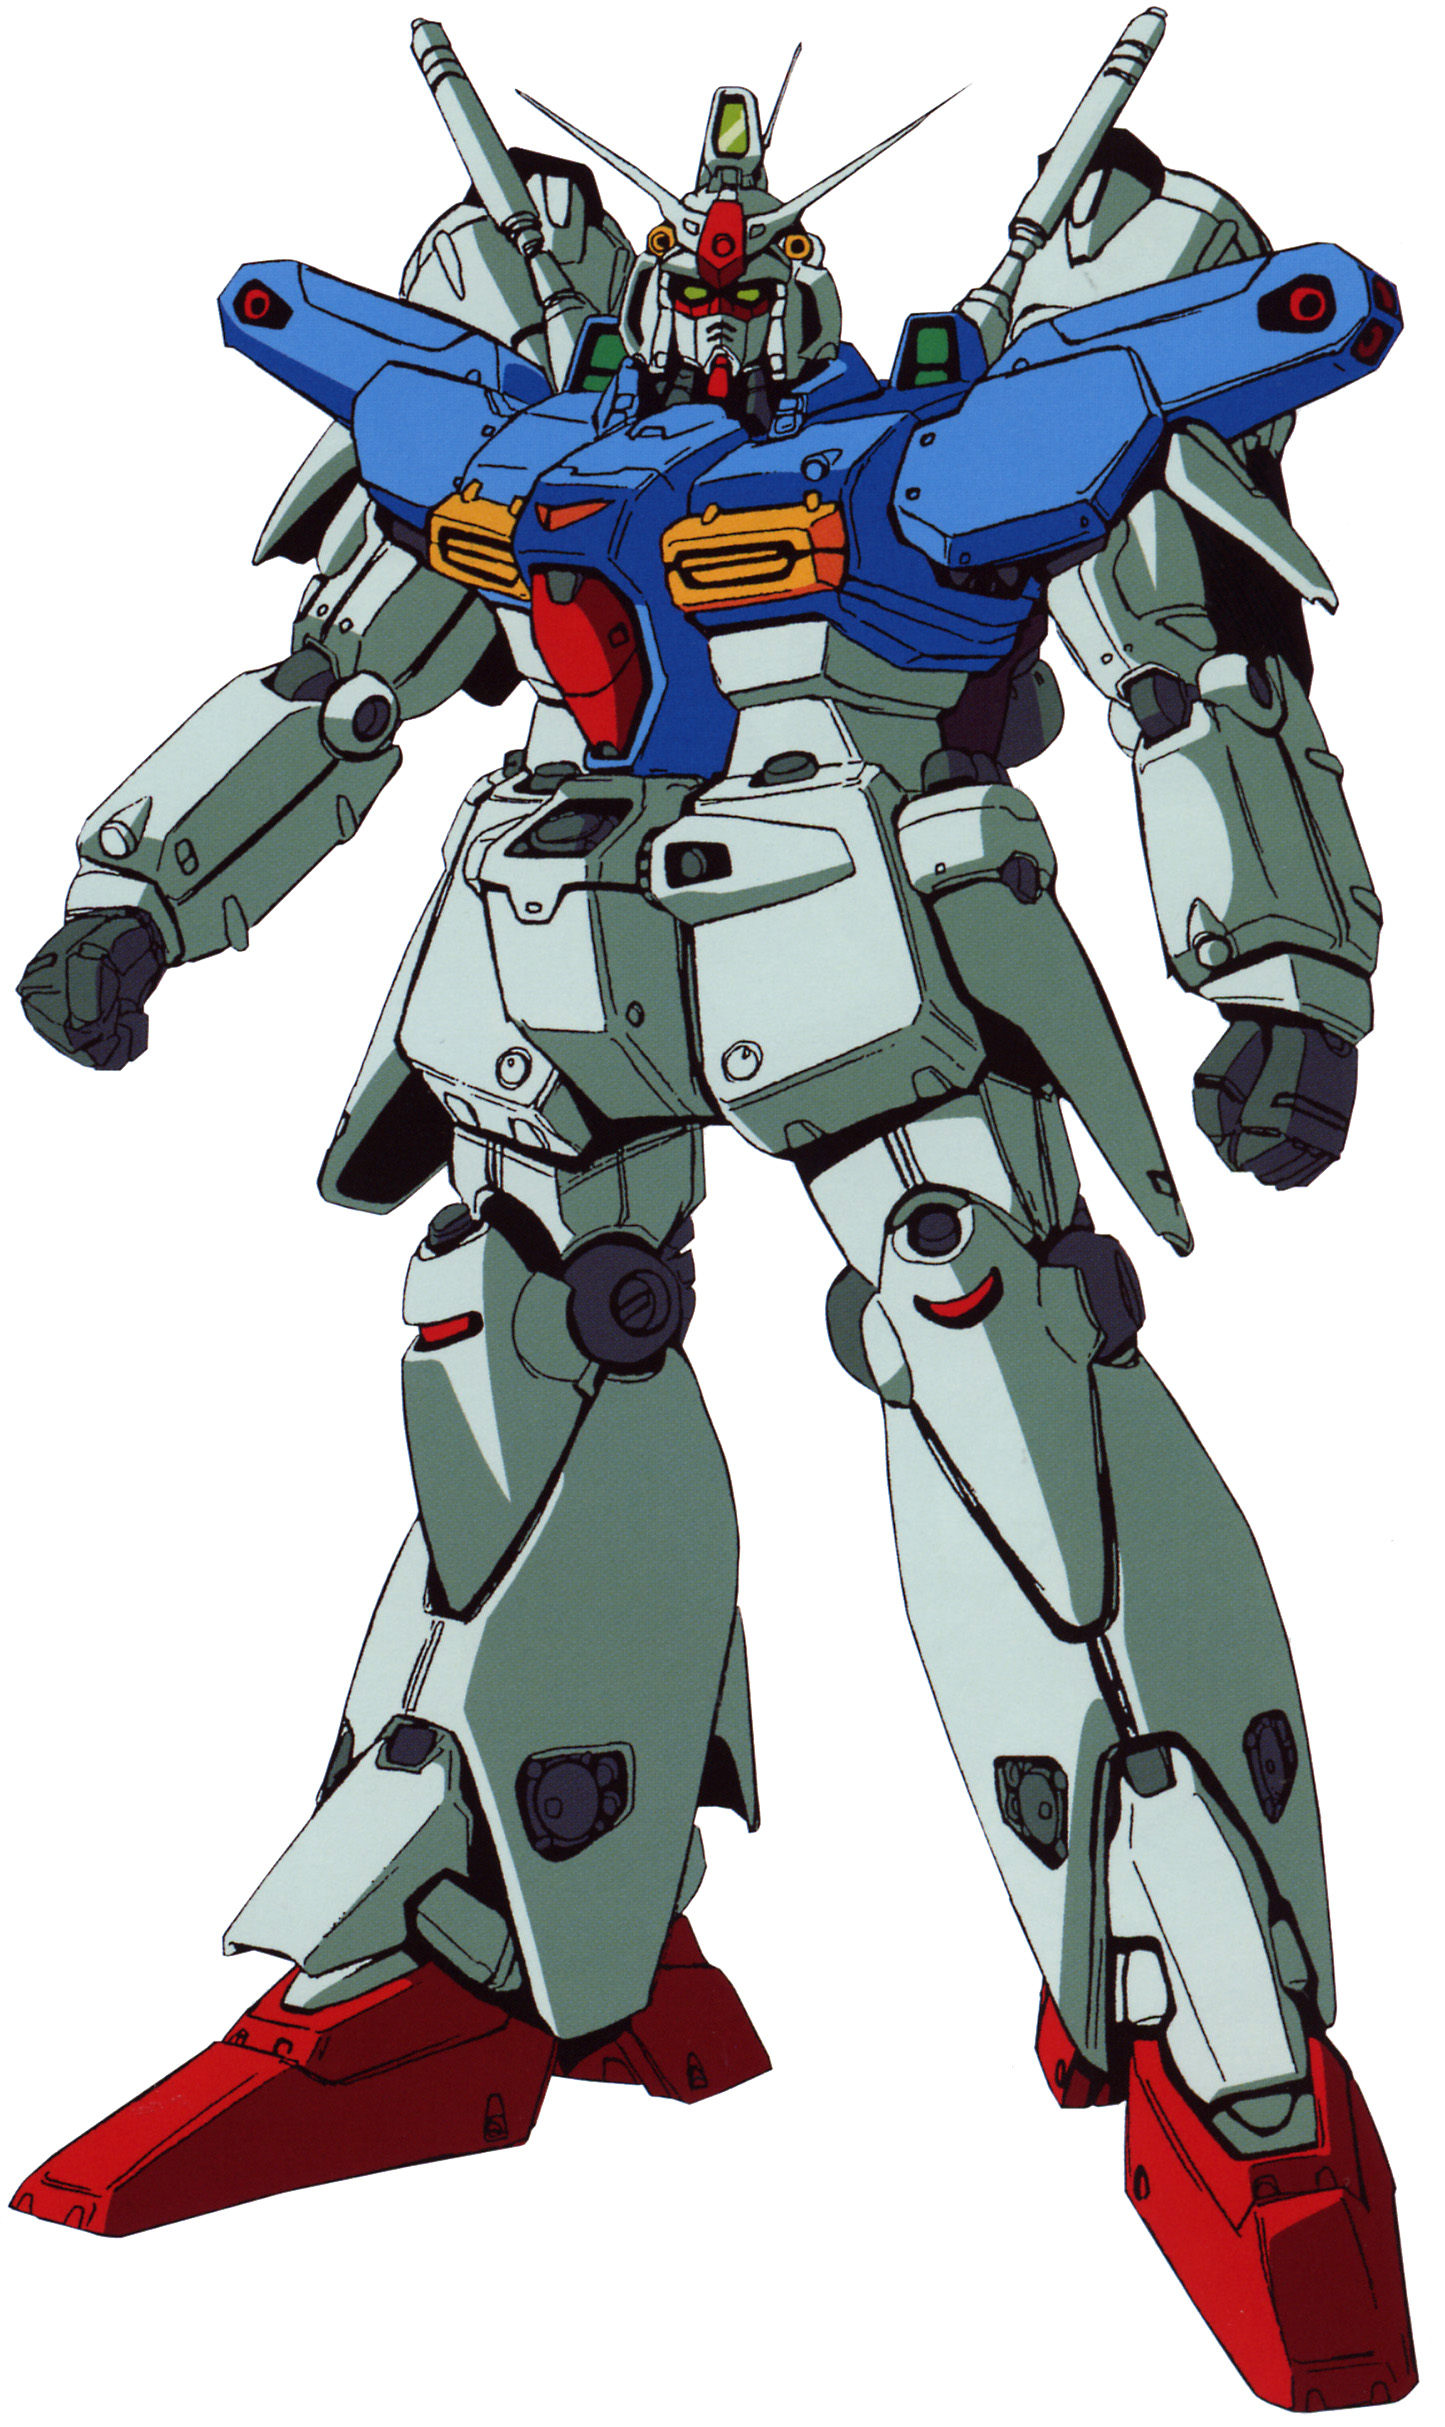 RX-78GP01-Fb Gundam 